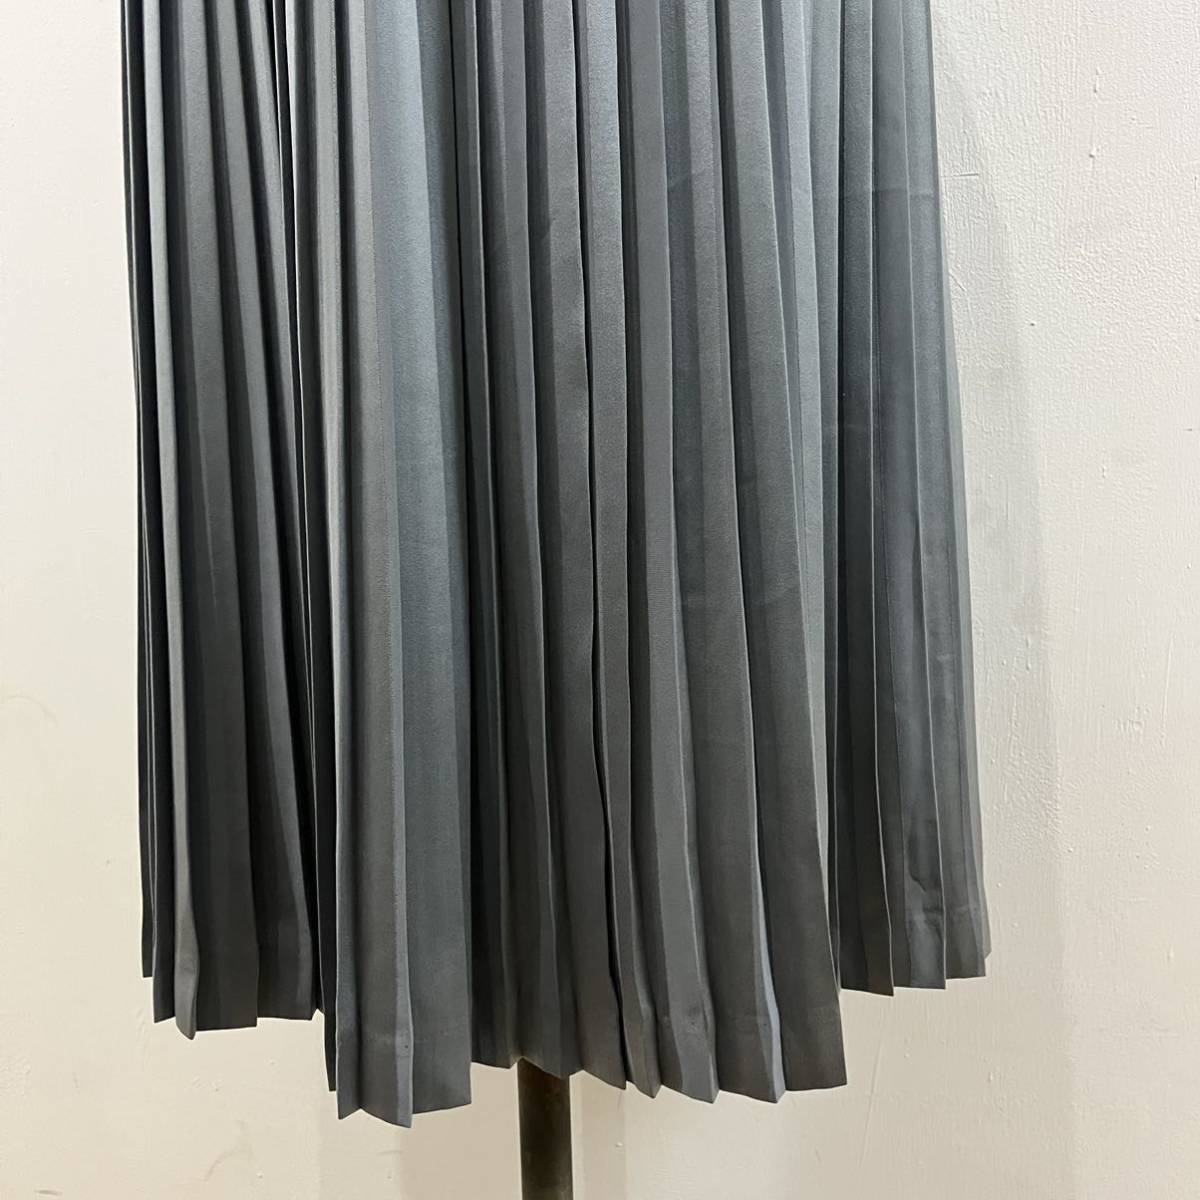  Italiya юбка в складку длинная юбка плиссировать дизайн gray silver сделано в Японии ita задний GKITALIYA[ letter pack почтовый сервис плюс отправка по почте возможно ]A